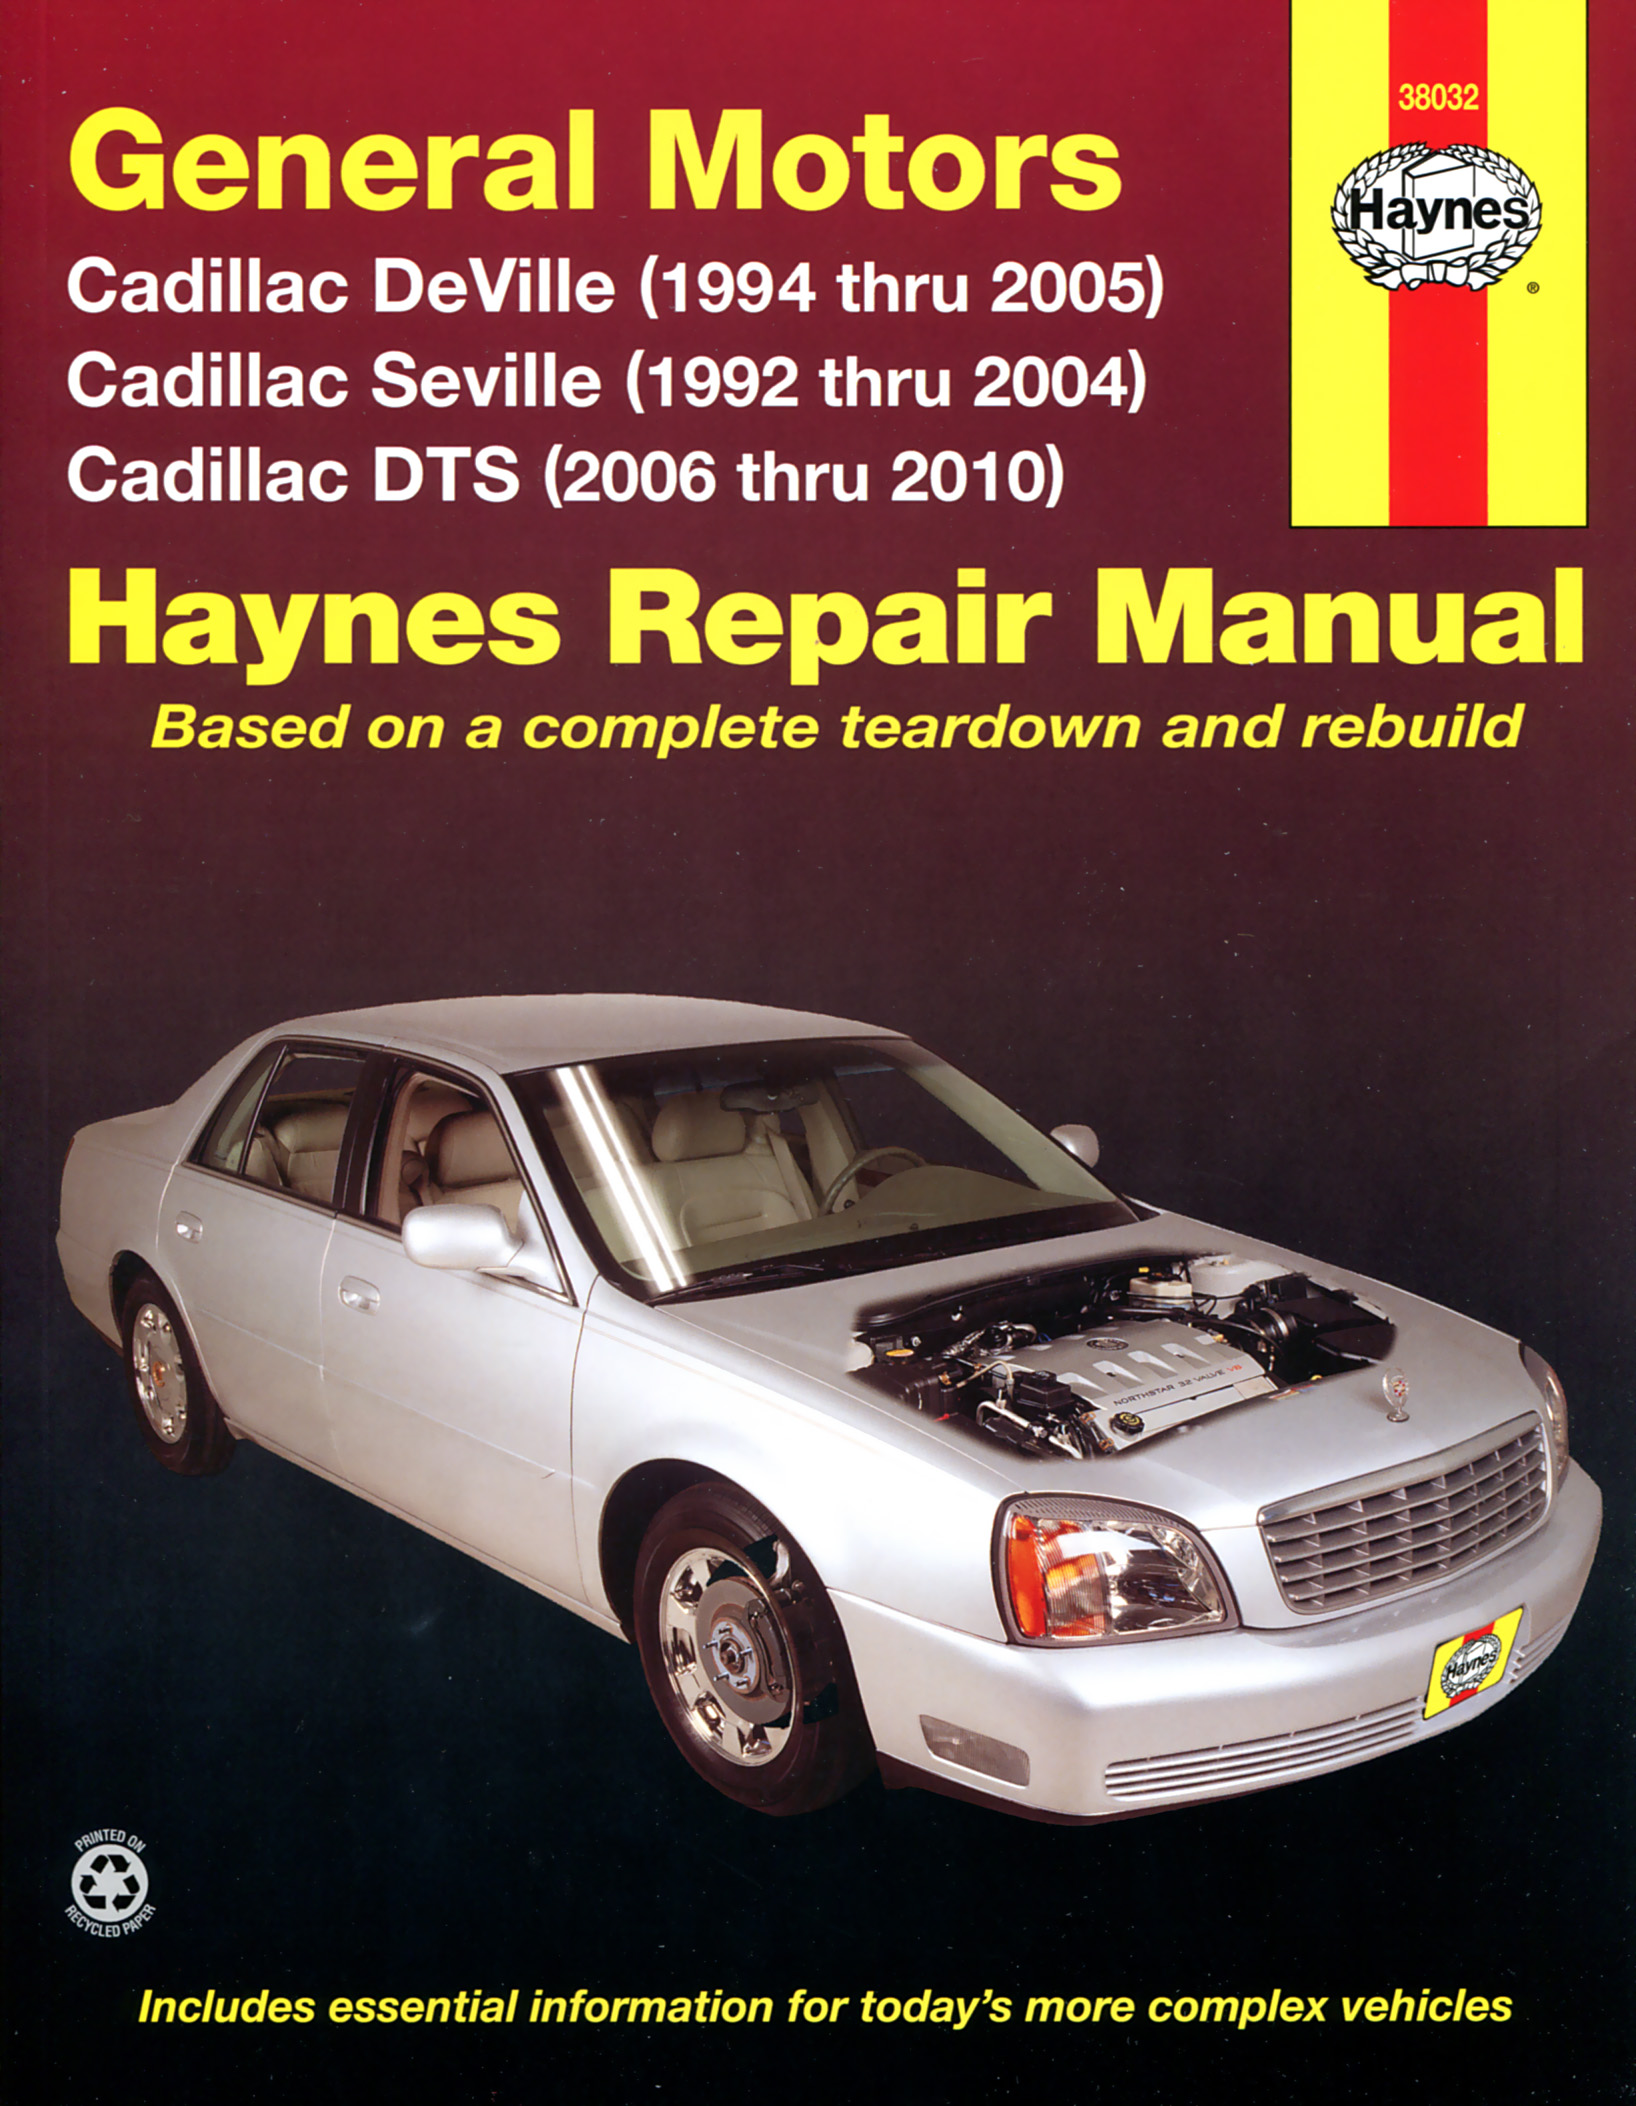 GM 2010 Cadillac DTS Navigation Manual #25974043A